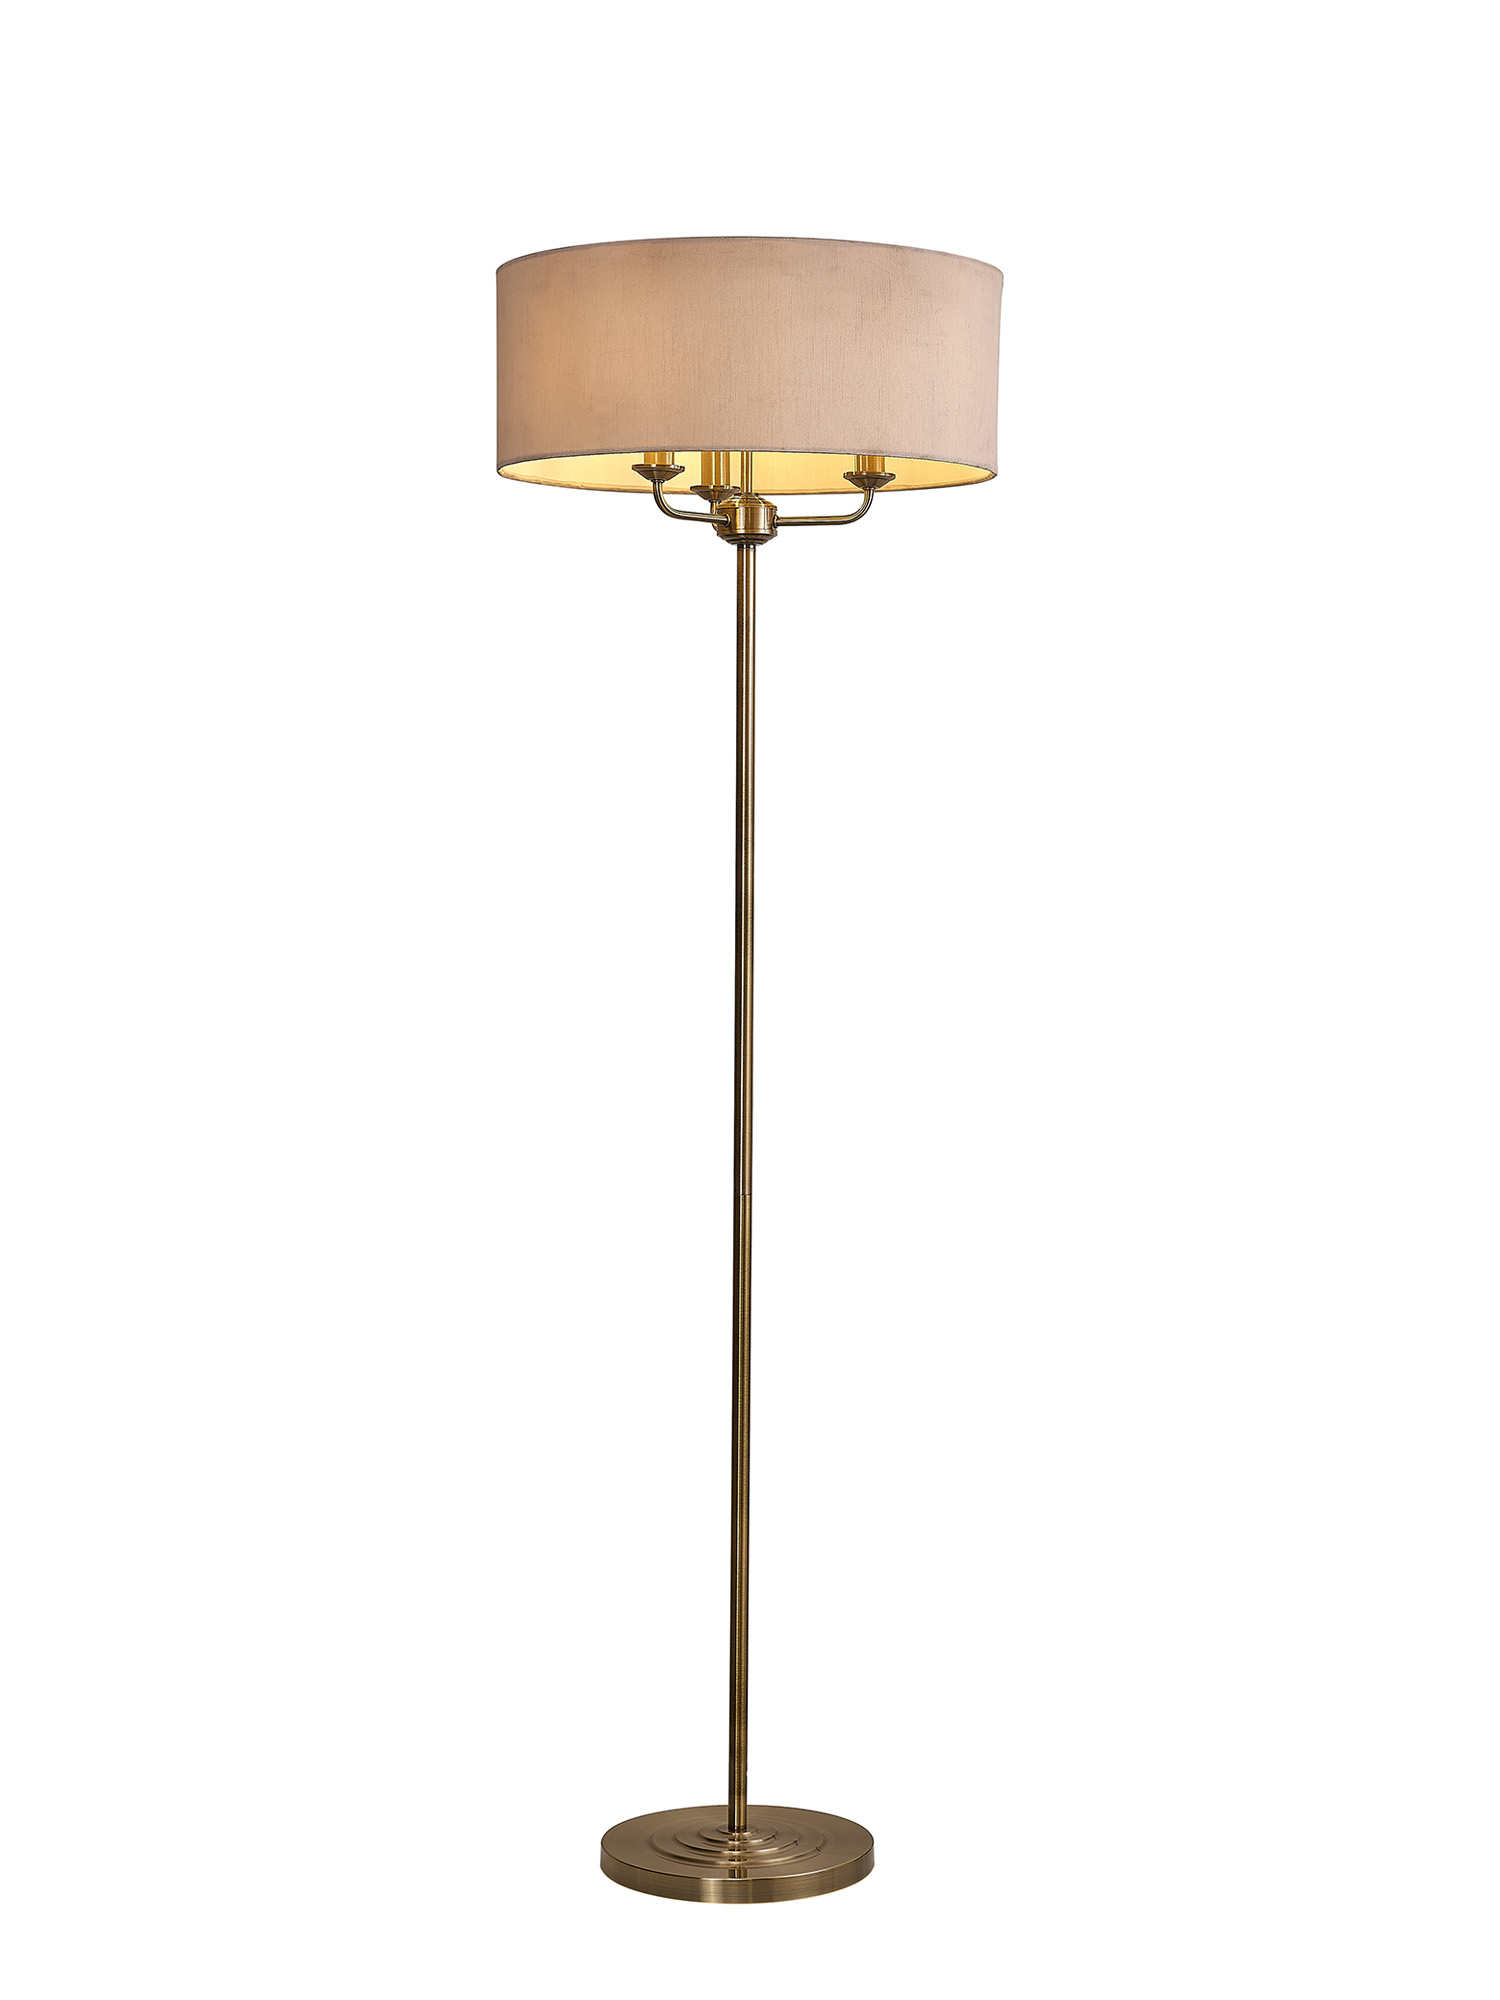 DK0916  Banyan 45cm 3 Light Floor Lamp Antique Brass, Nude Beige